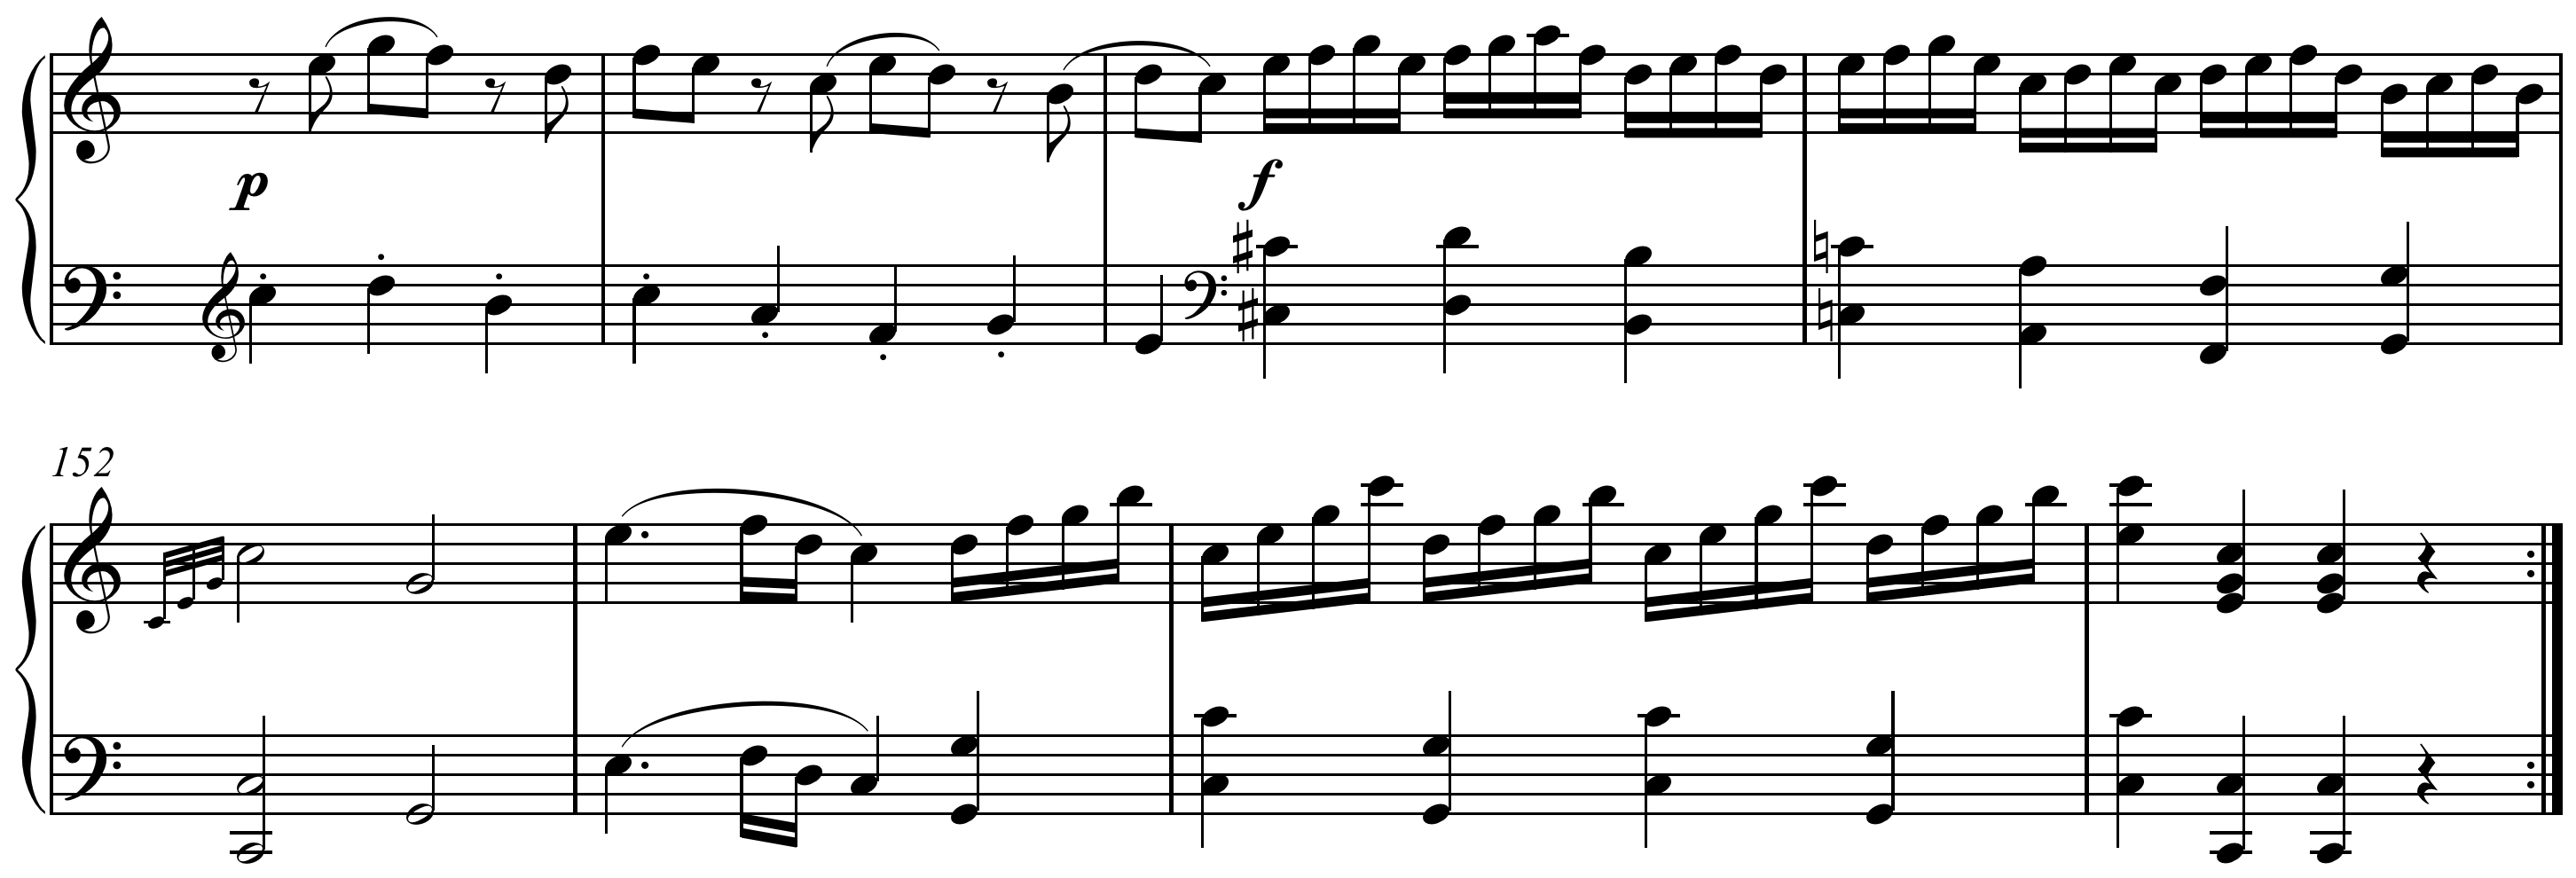 Sheet music for Mozart's Coda Sonata in C Major